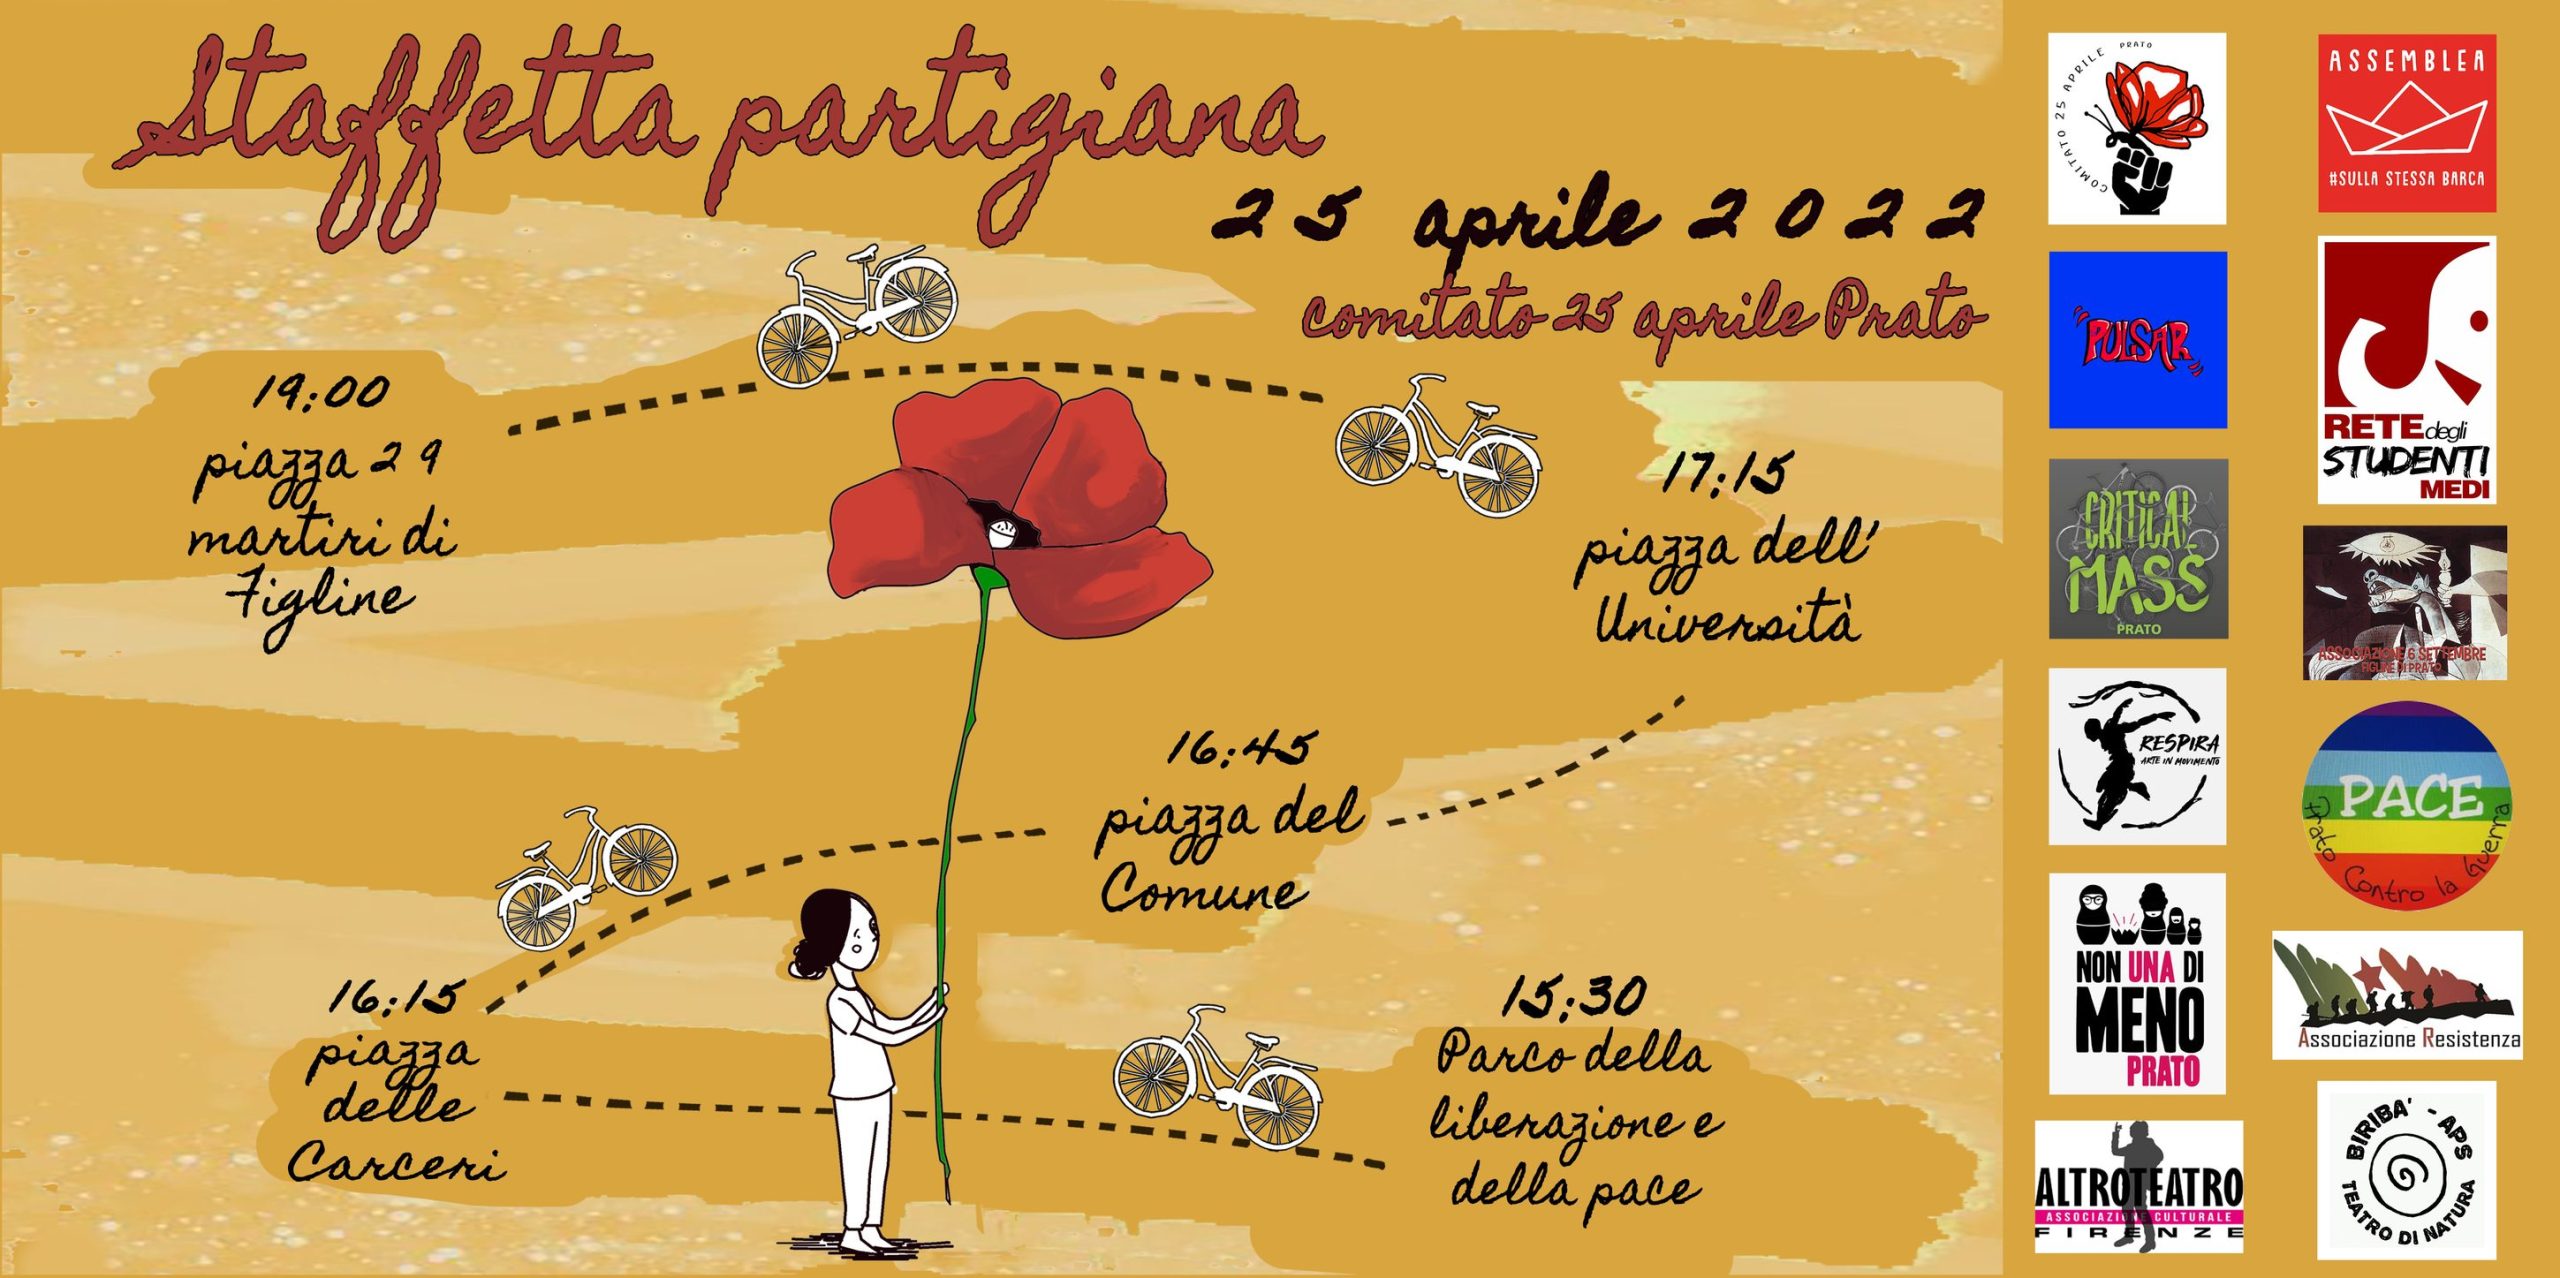 Comitato promotore del 25aprile a Prato – Staffetta Partigiana e pizzata serale per la Festa della Liberazione